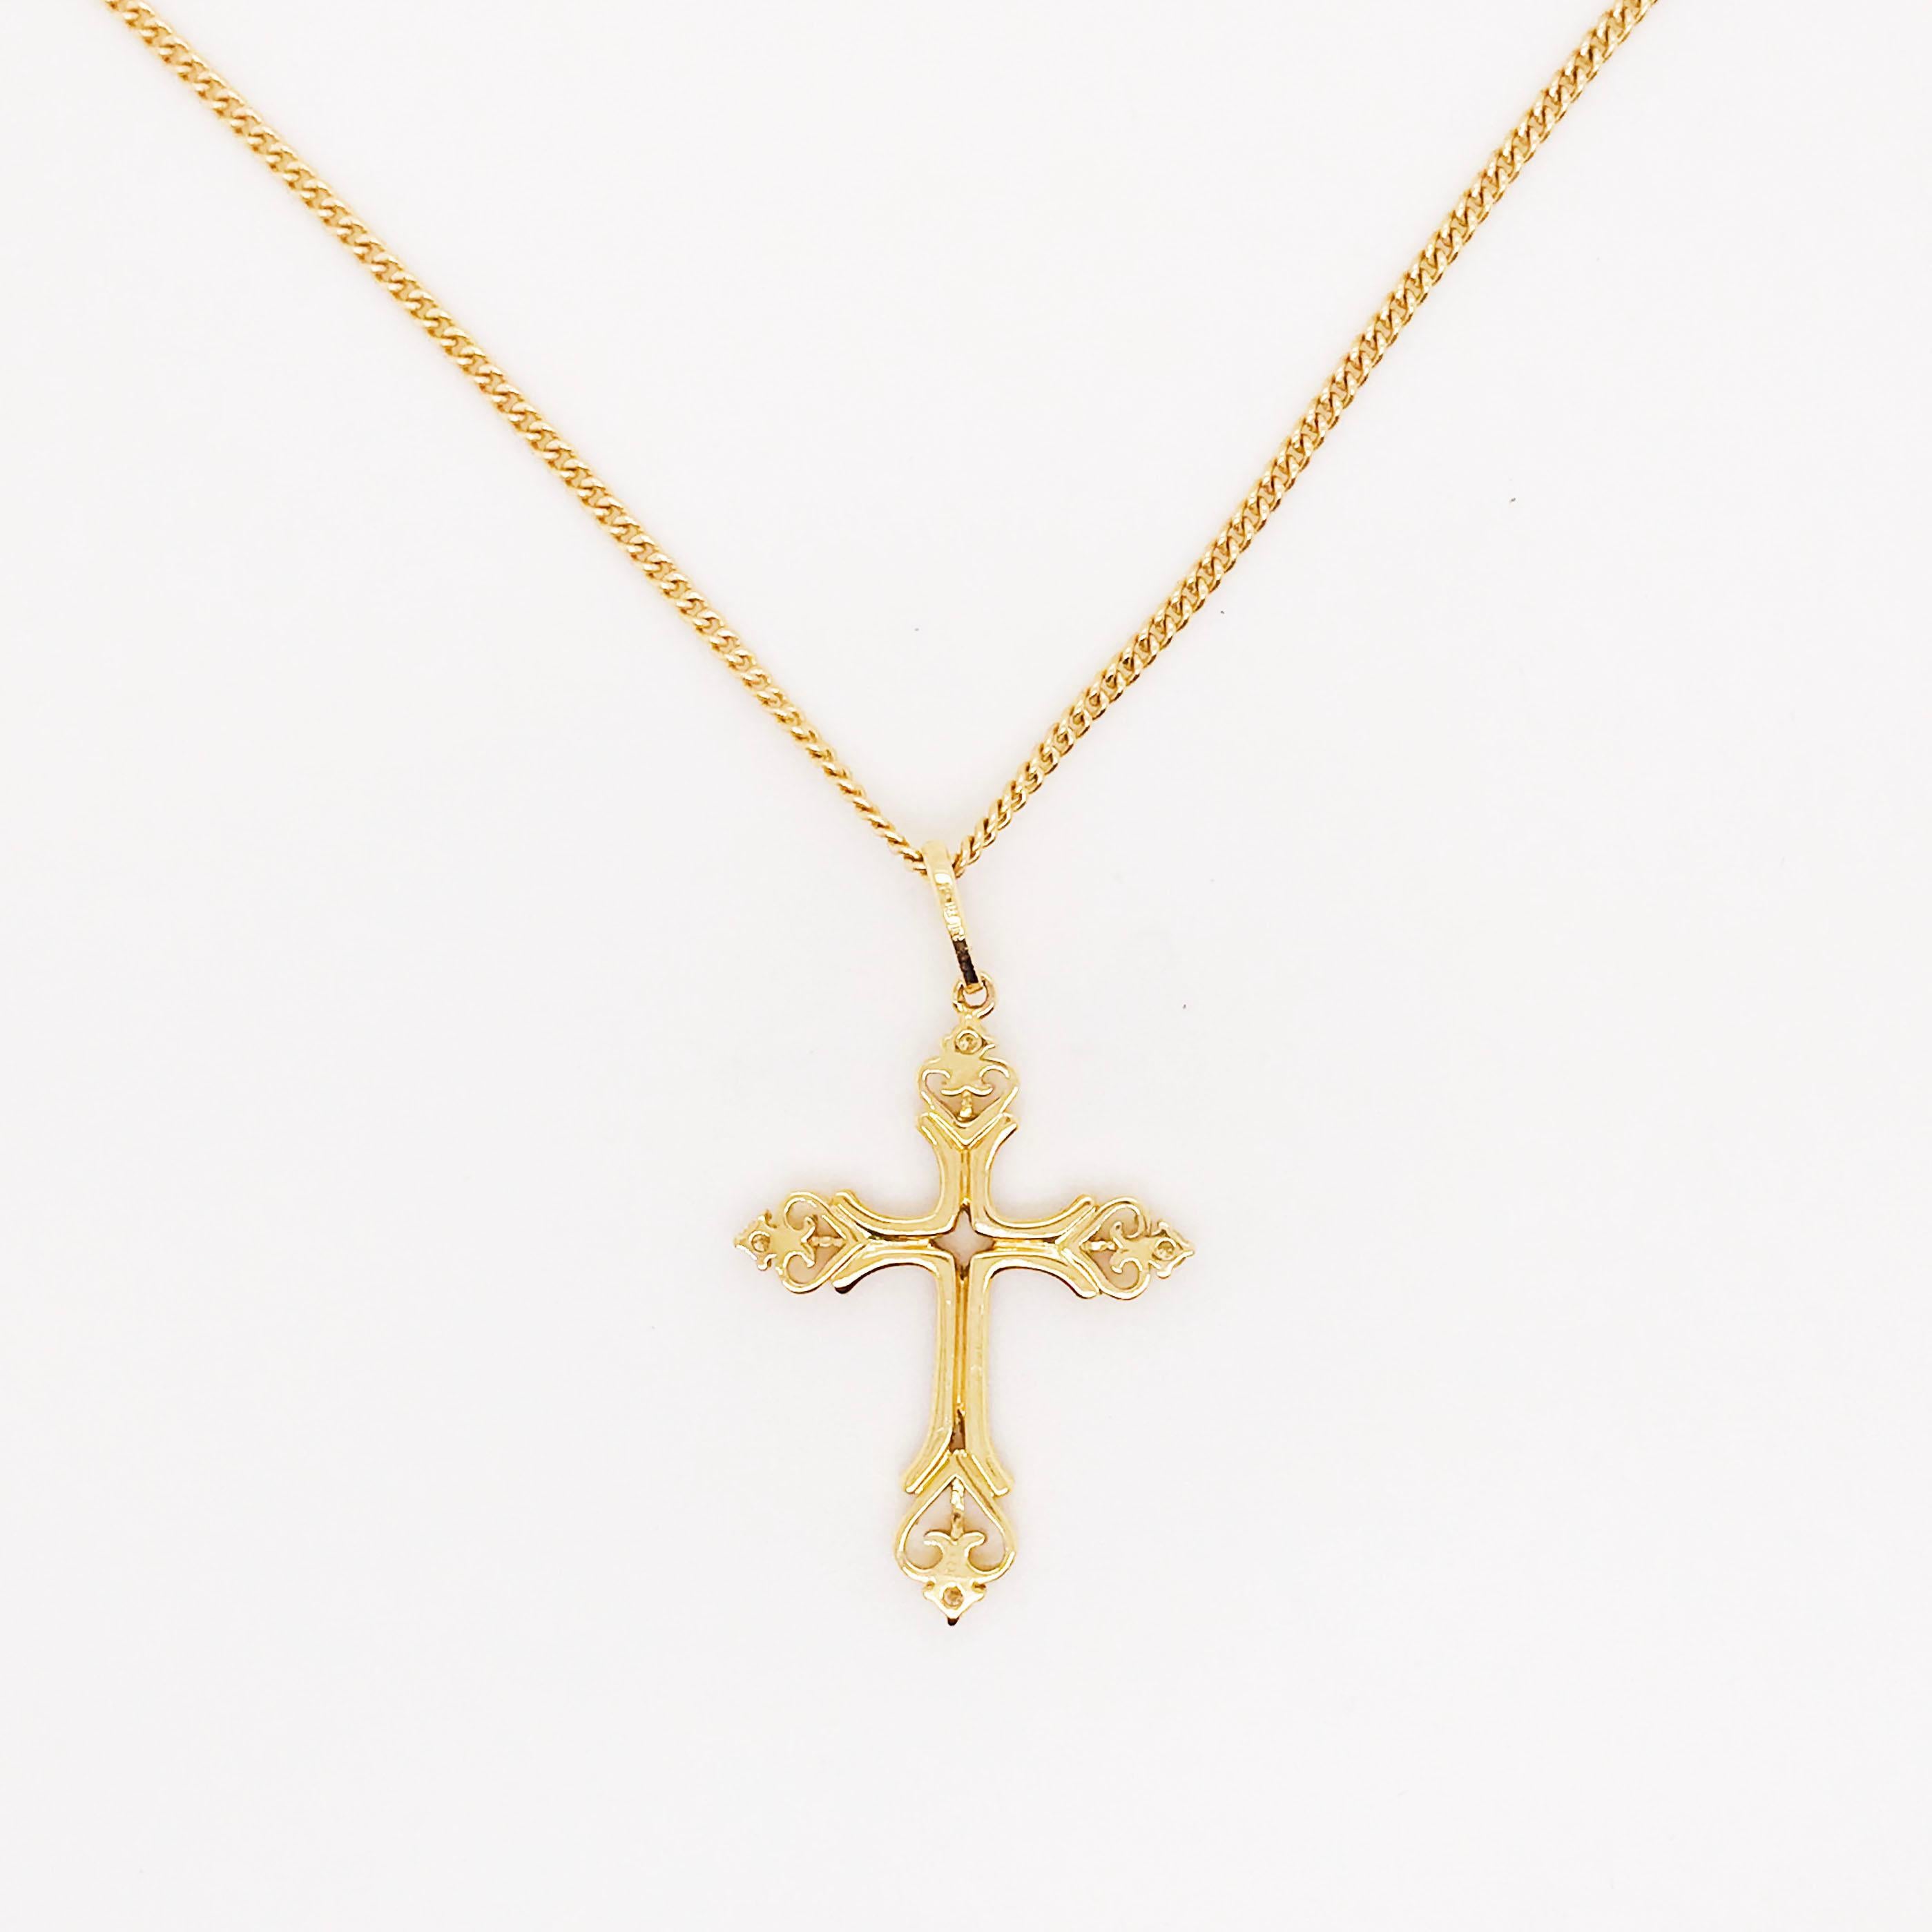 Ce magnifique pendentif en forme de croix en diamant, très complexe, est un design étonnant et saisissant. Le pendentif croix est fabriqué en or jaune 18 carats avec de véritables diamants naturels. La croix est ornée de perles faites à la main et